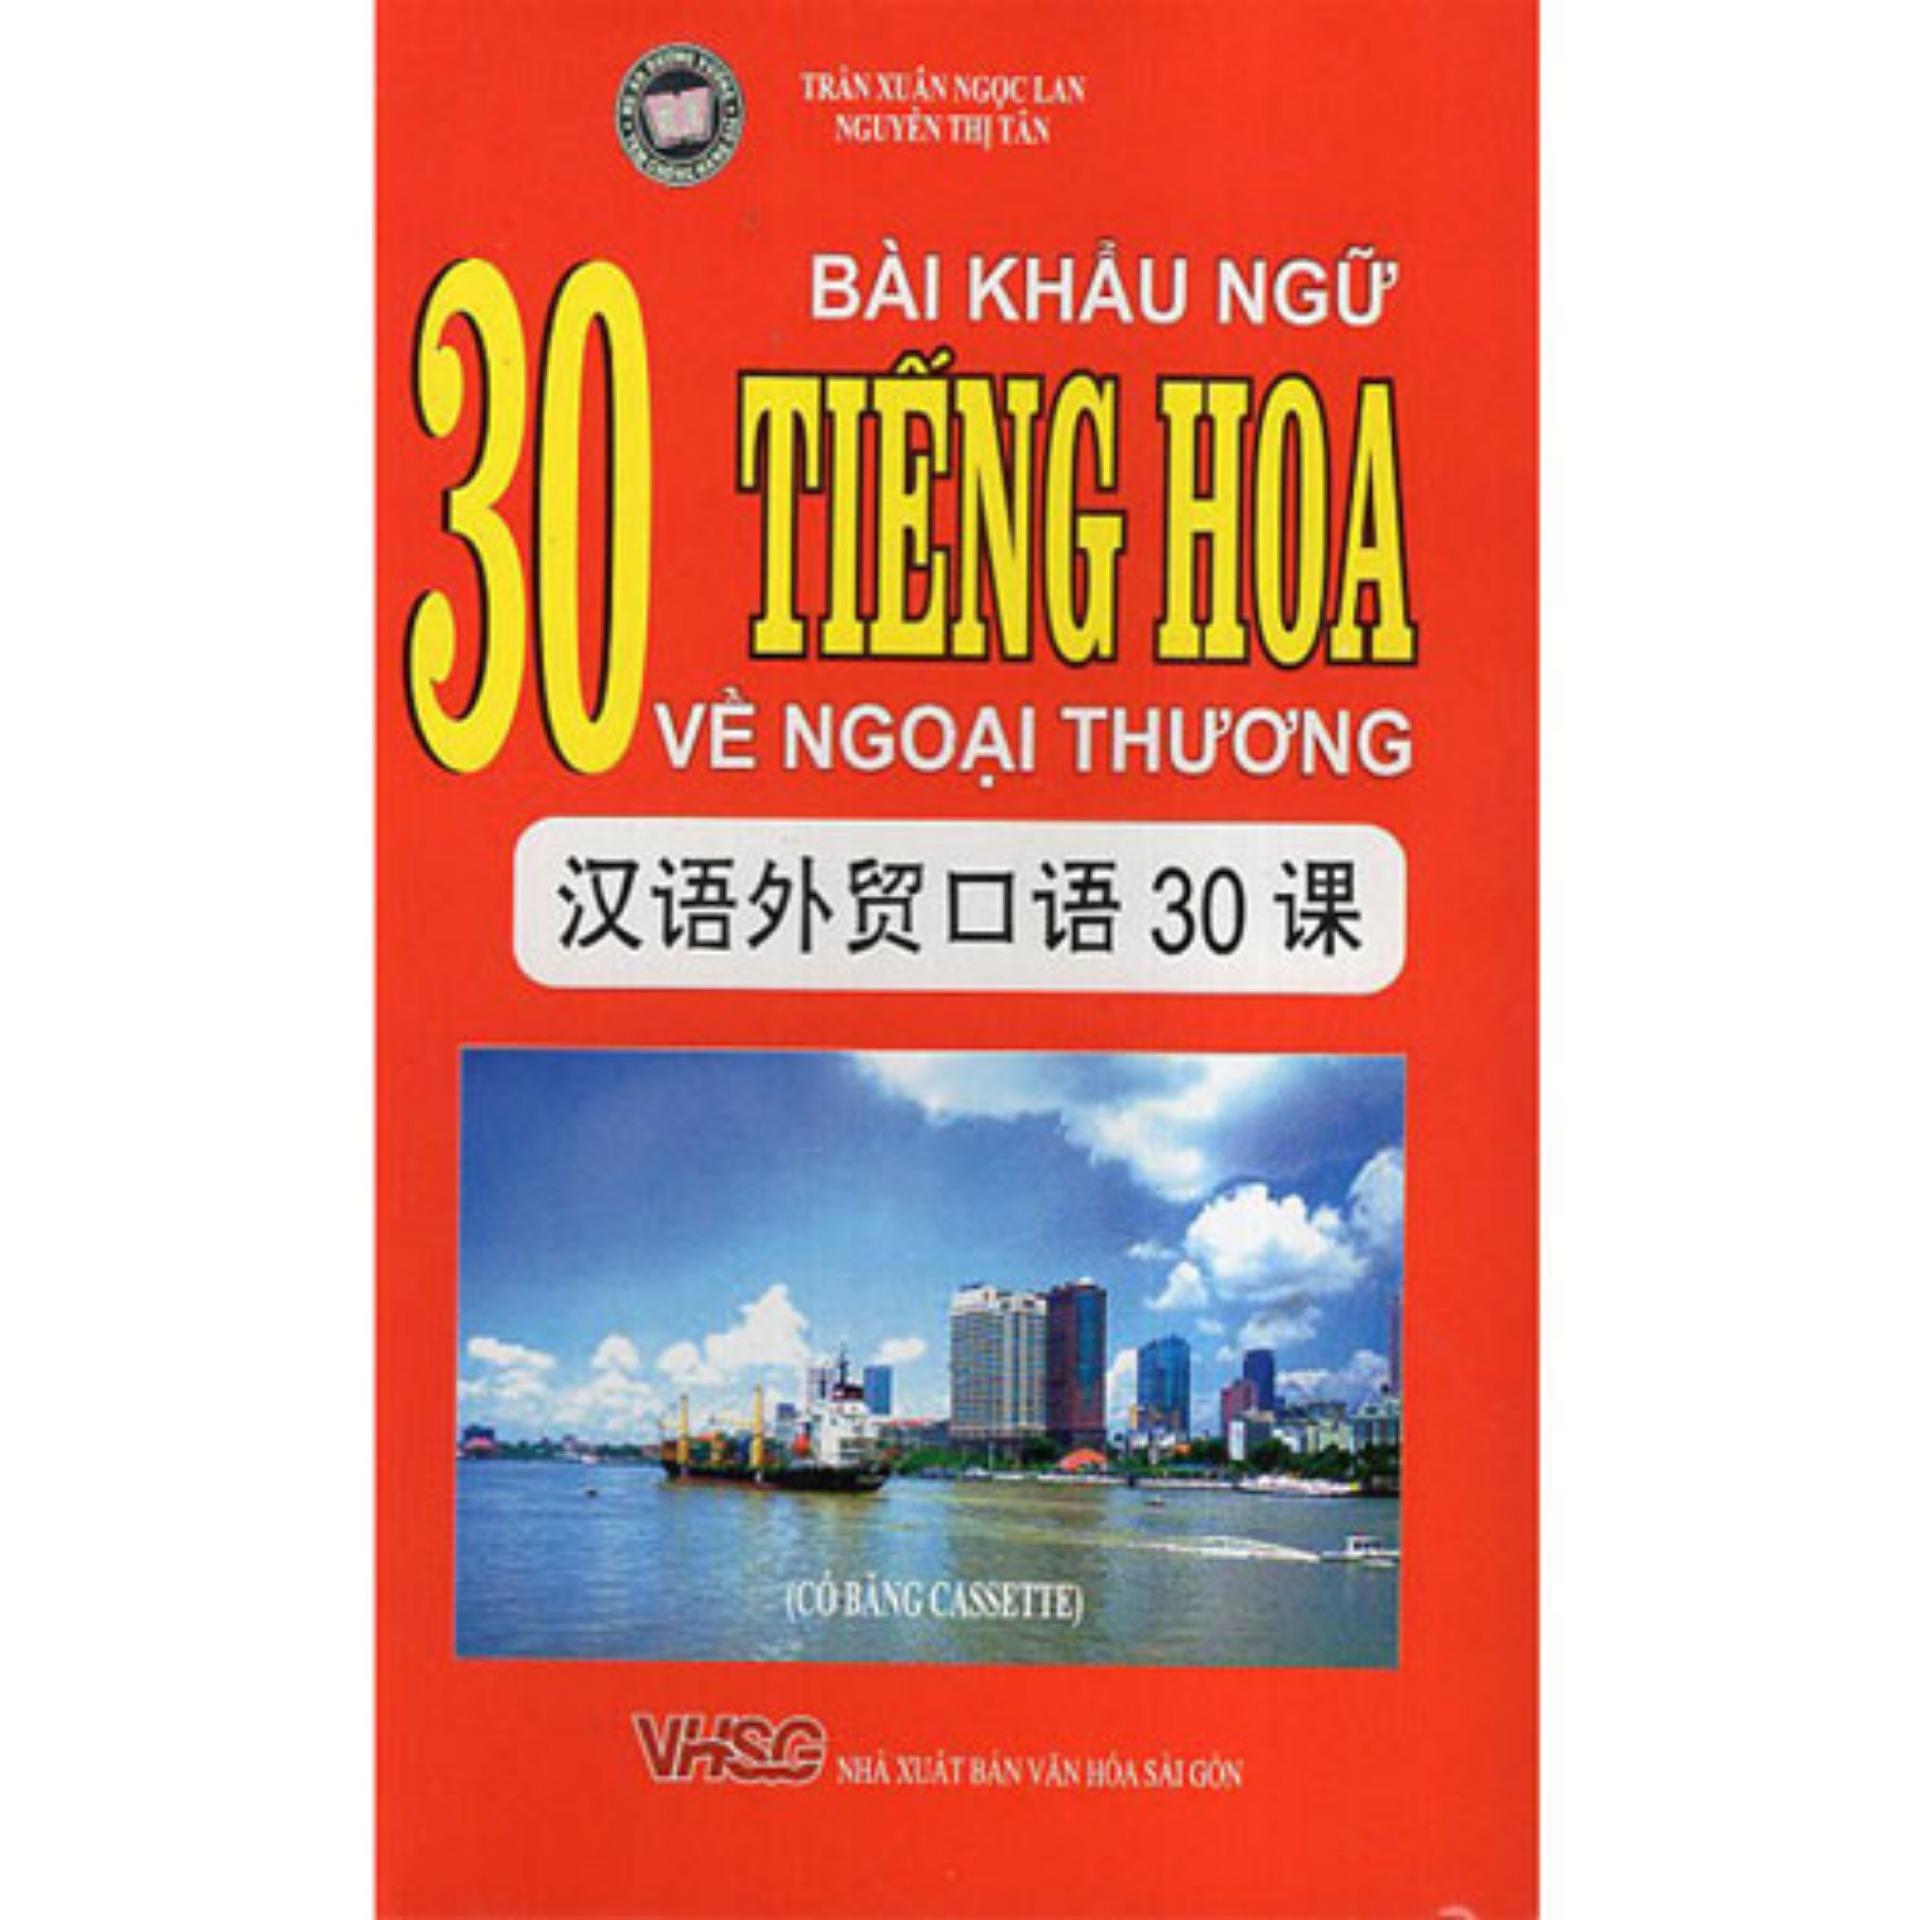 30 Bài Khẩu Ngữ Tiếng Hoa Về Ngoại Thương - 75k